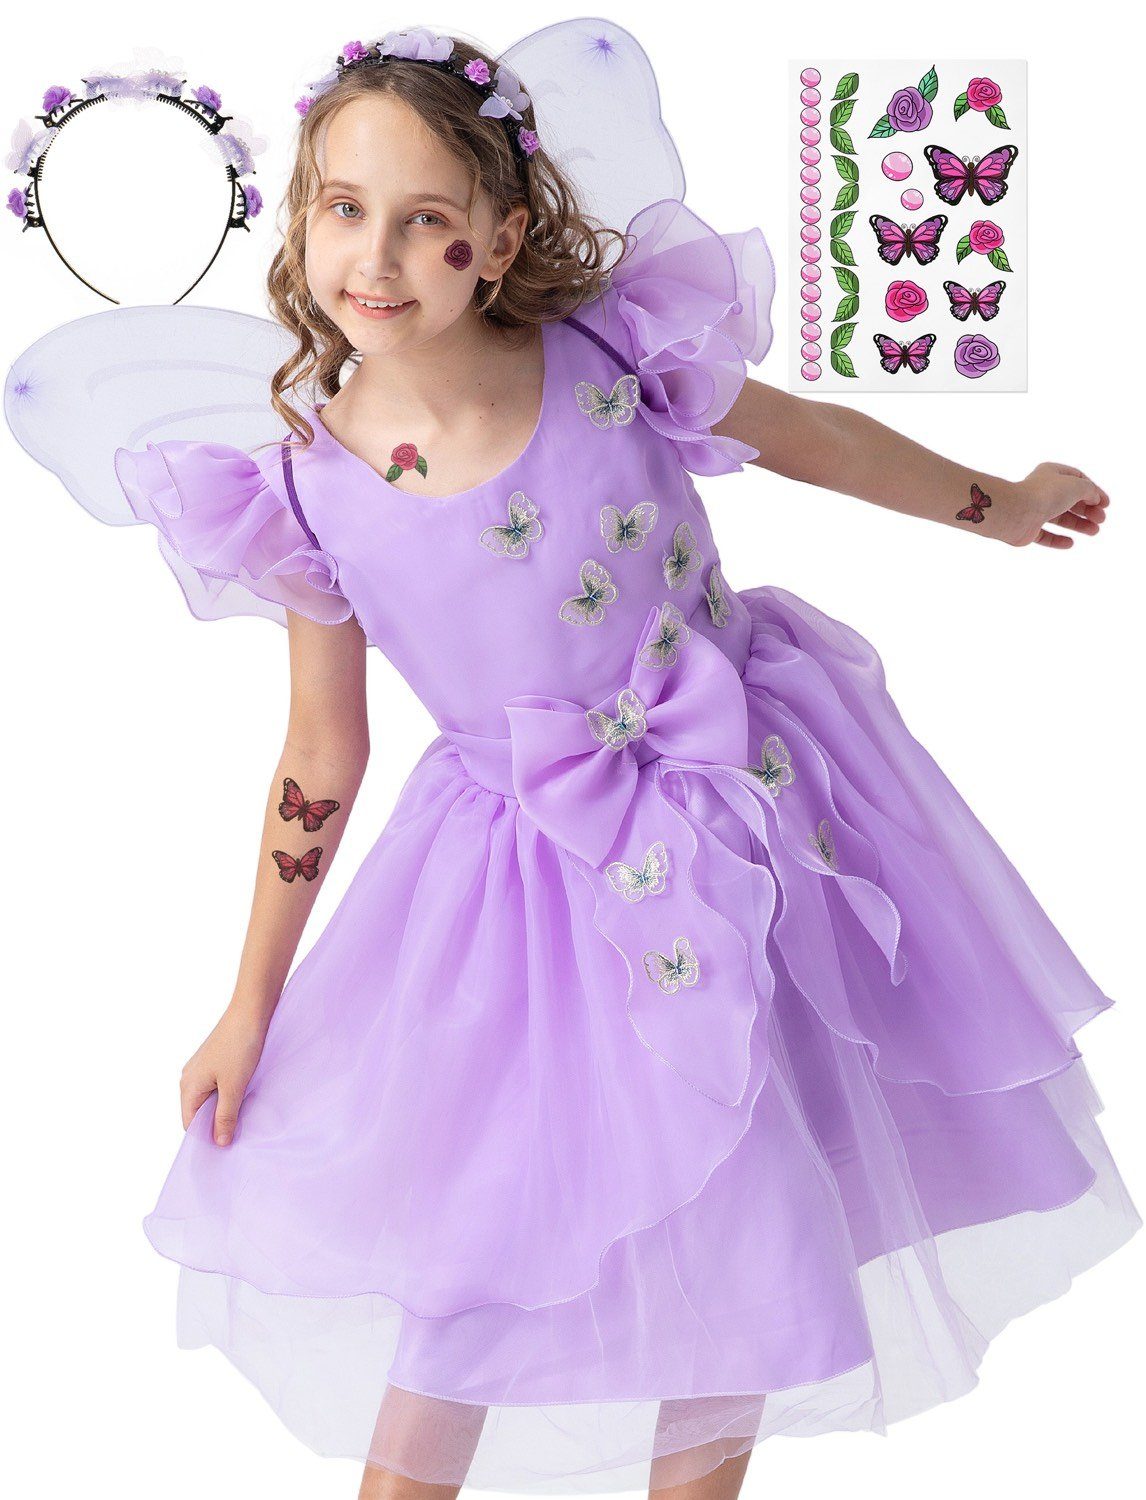 Corimori Prinzessin-Kostüm Prinzessin Kleid Kostüm-Set für Kinder Schmetterling Mira, Feenkleid, Kostüm Mira für Fasching, lila, Größe 128/134